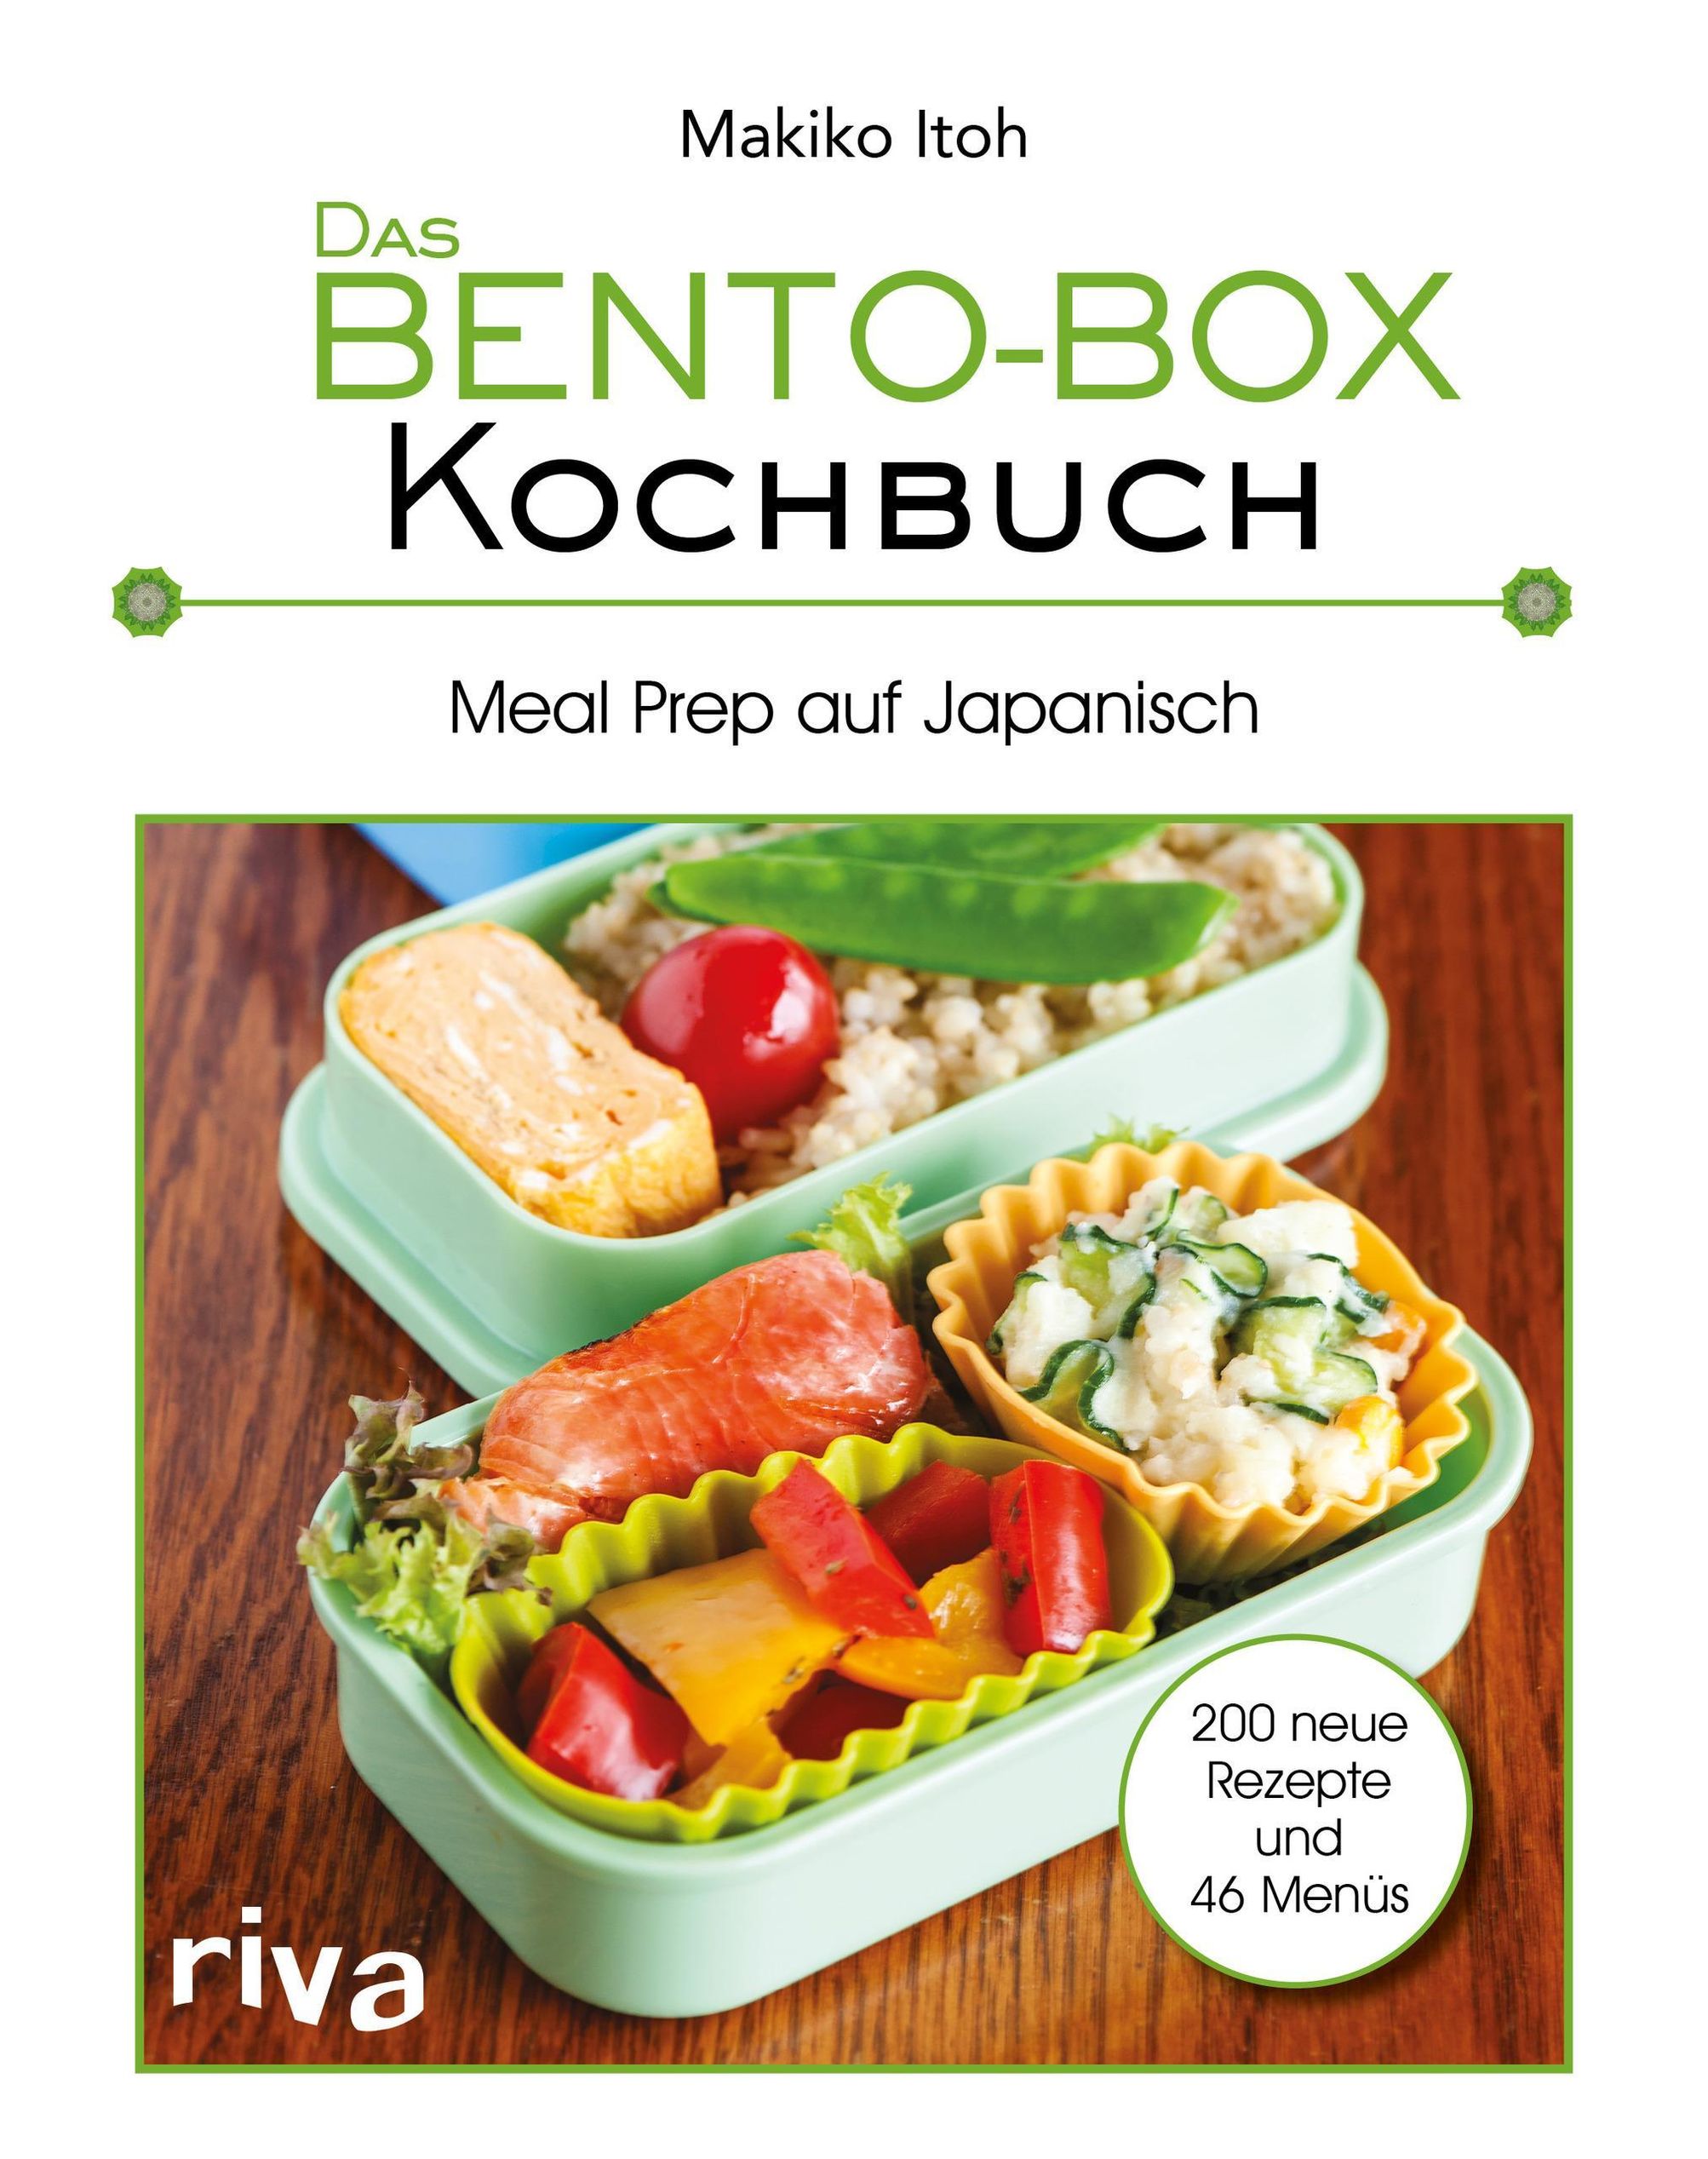 Das Bento-Box-Kochbuch Buch von Makiko Itoh versandkostenfrei bestellen